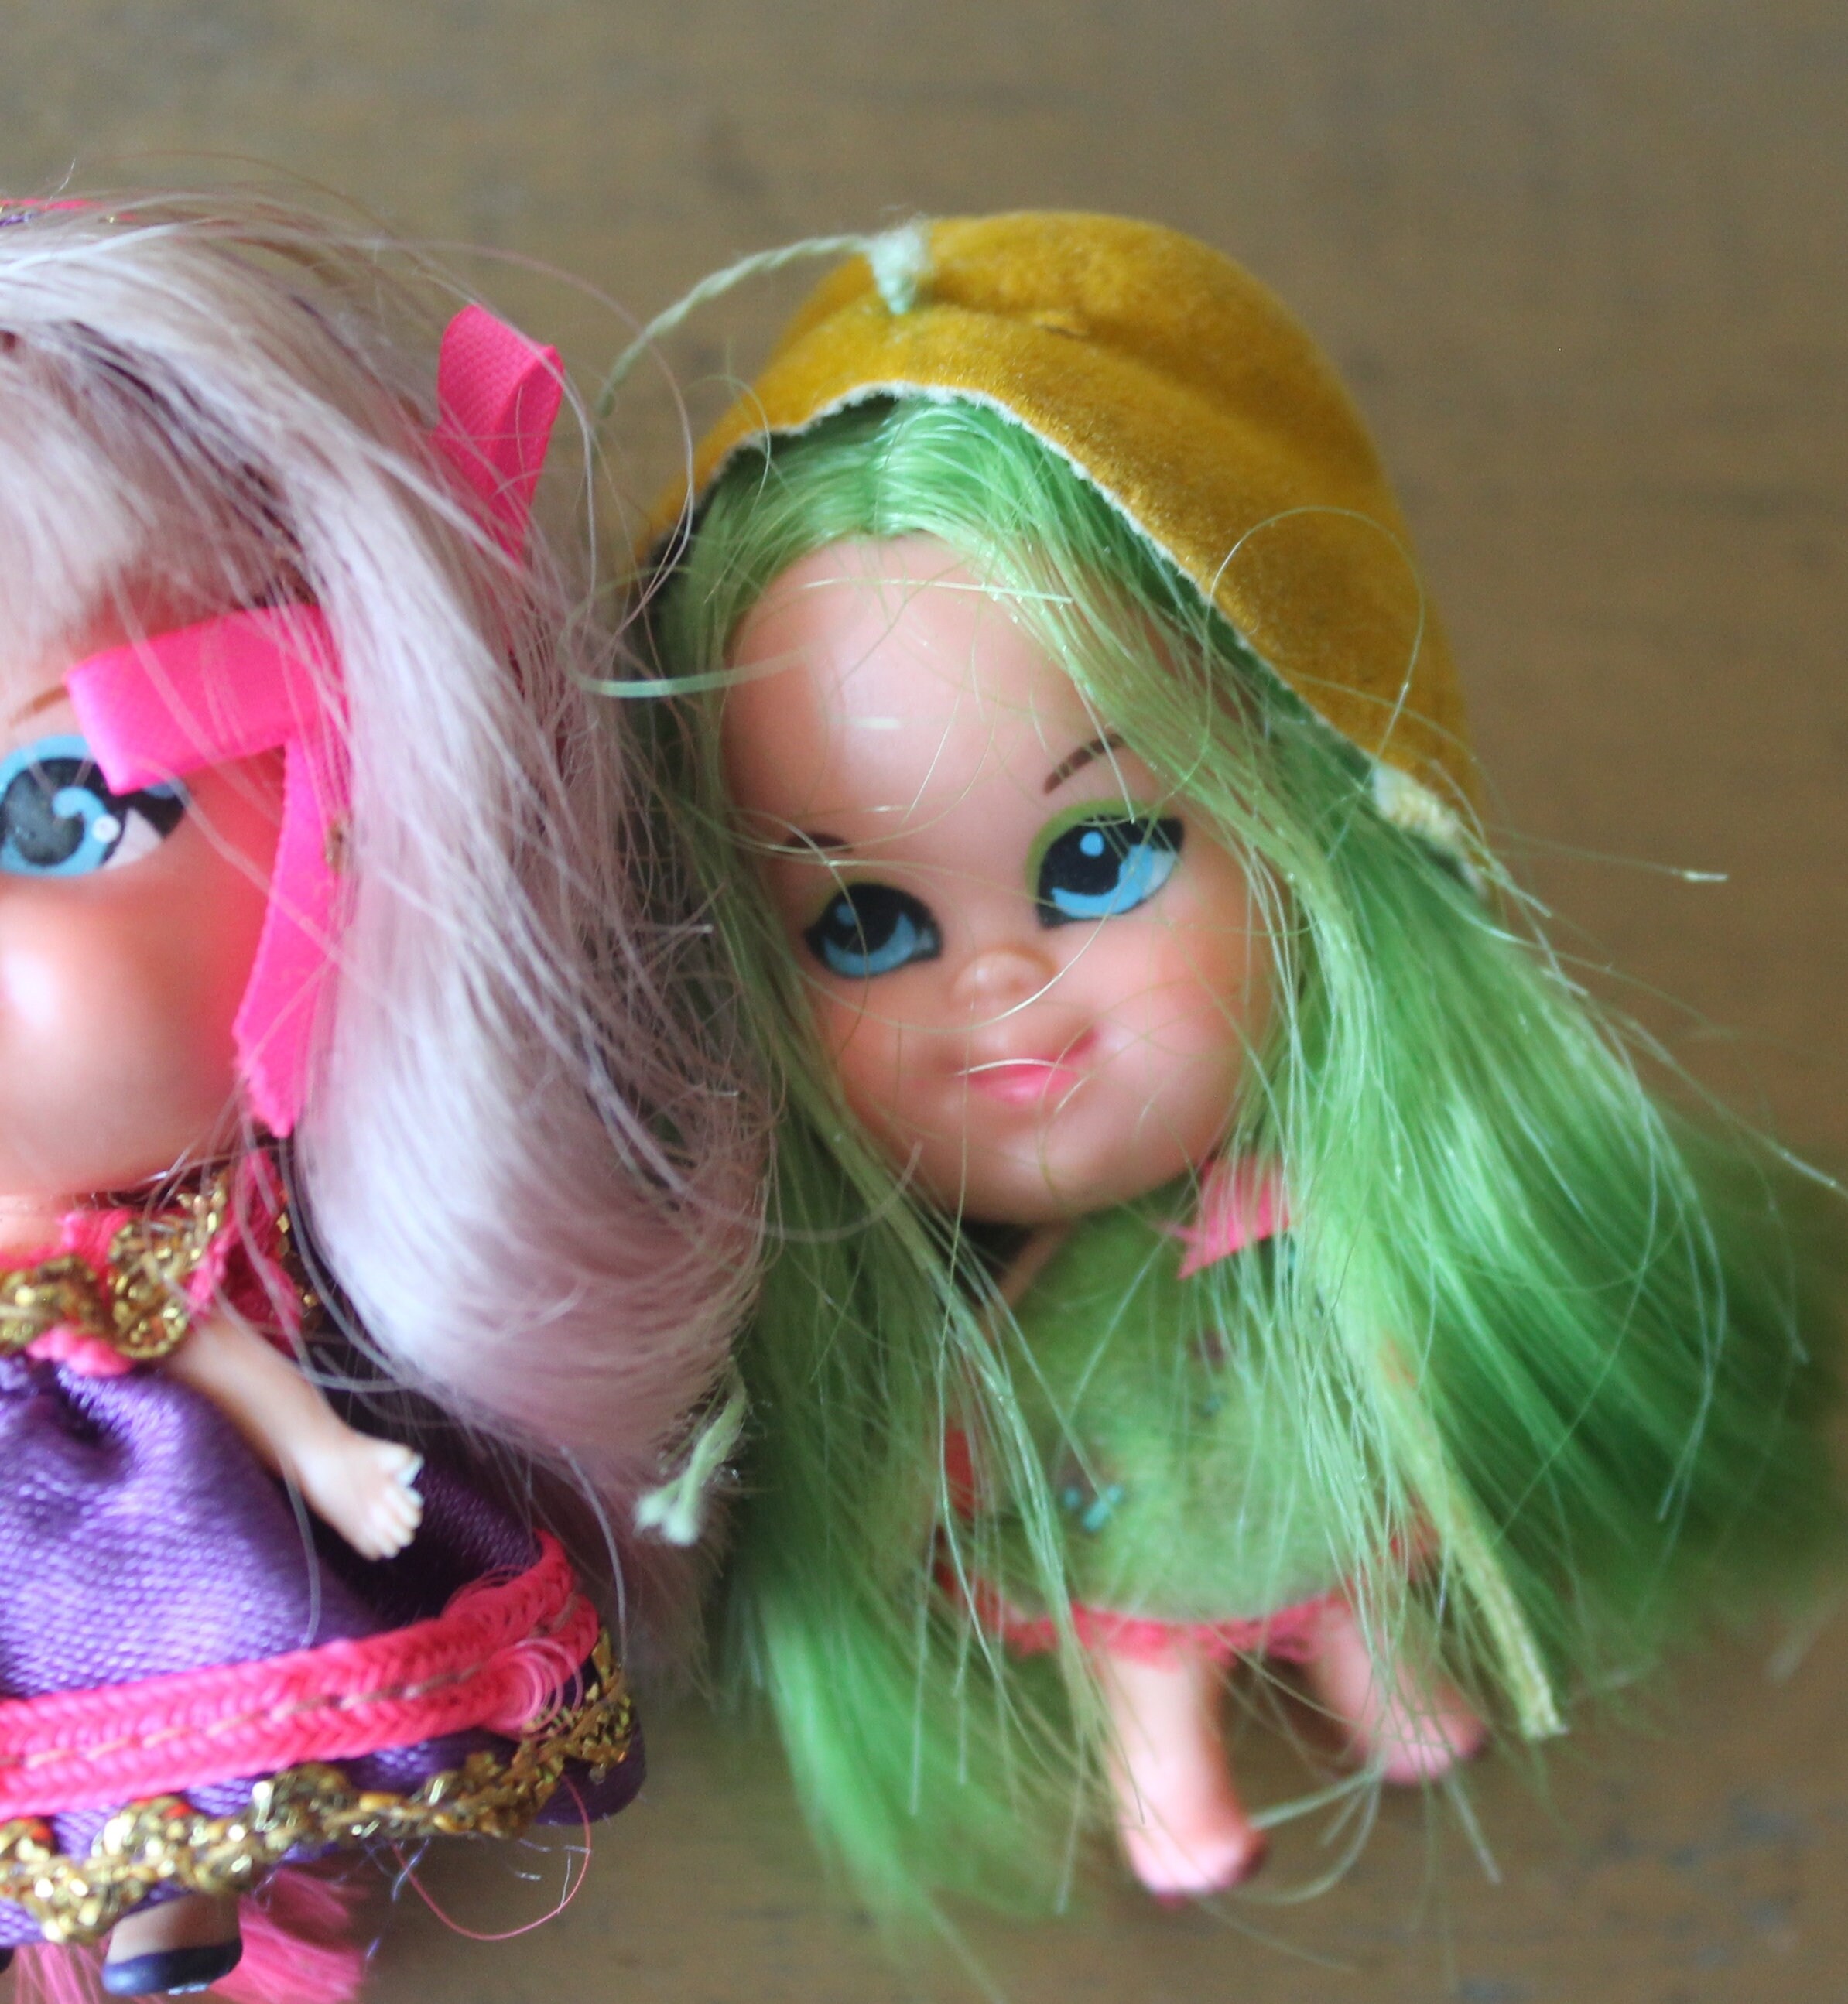 Vintage Mattel Liddle Kiddles, Vintage Little Kiddles Lolli Grape Doll, Vintage  Liddle Kiddle Luscious Lime Doll, Set of Liddle Kiddle Dolls 